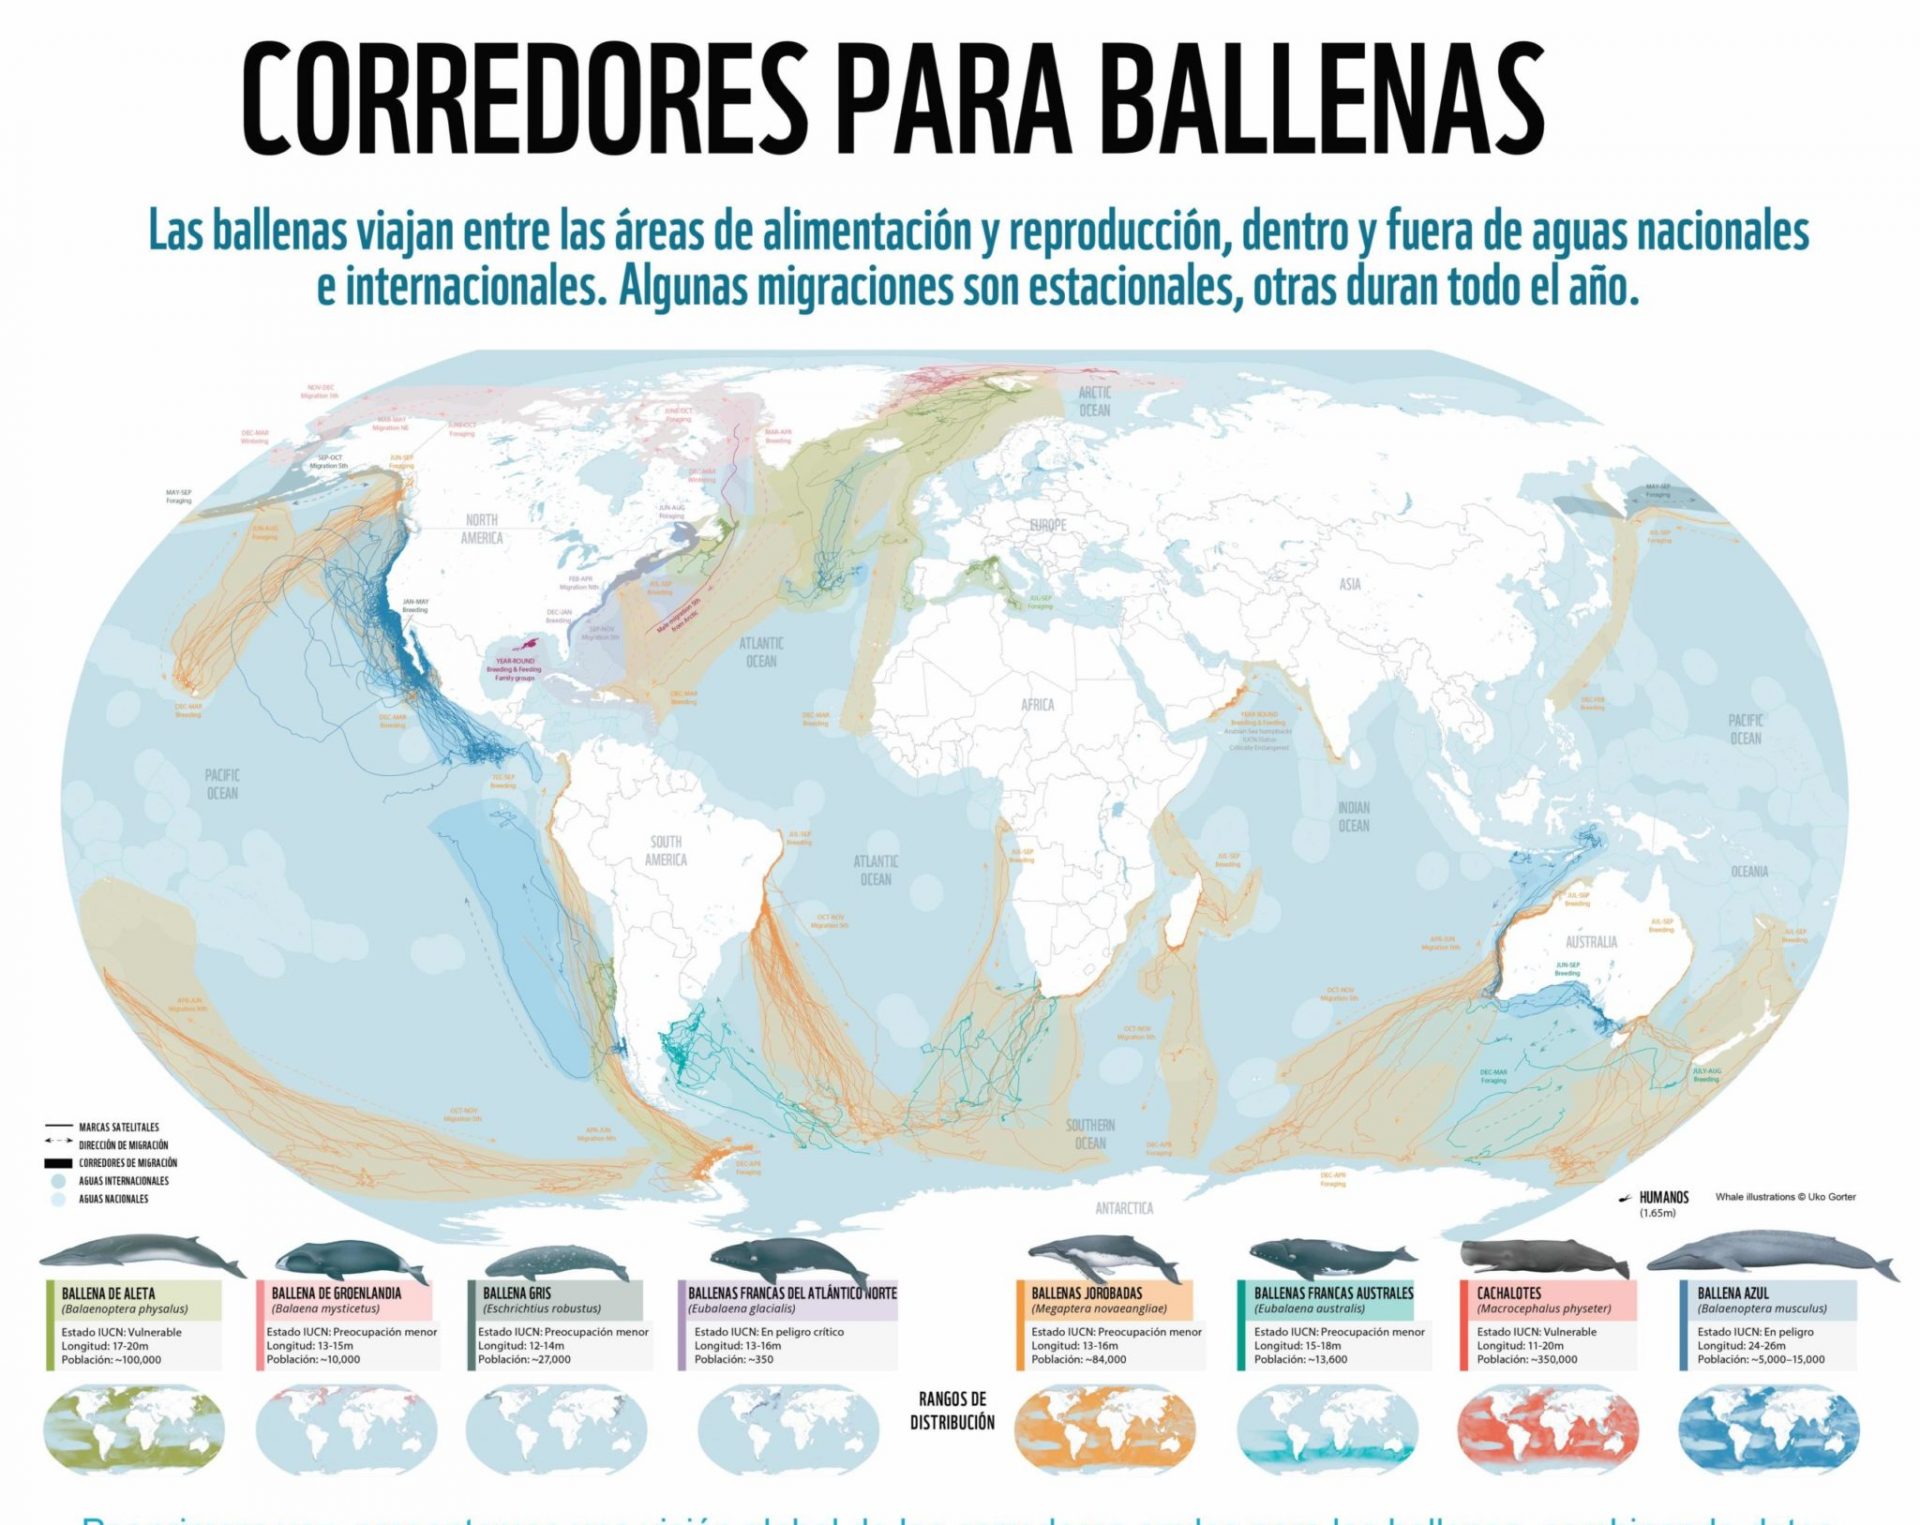 CORREDORES-BALLENAS-01-scaled-e1645674183644-2048×1627